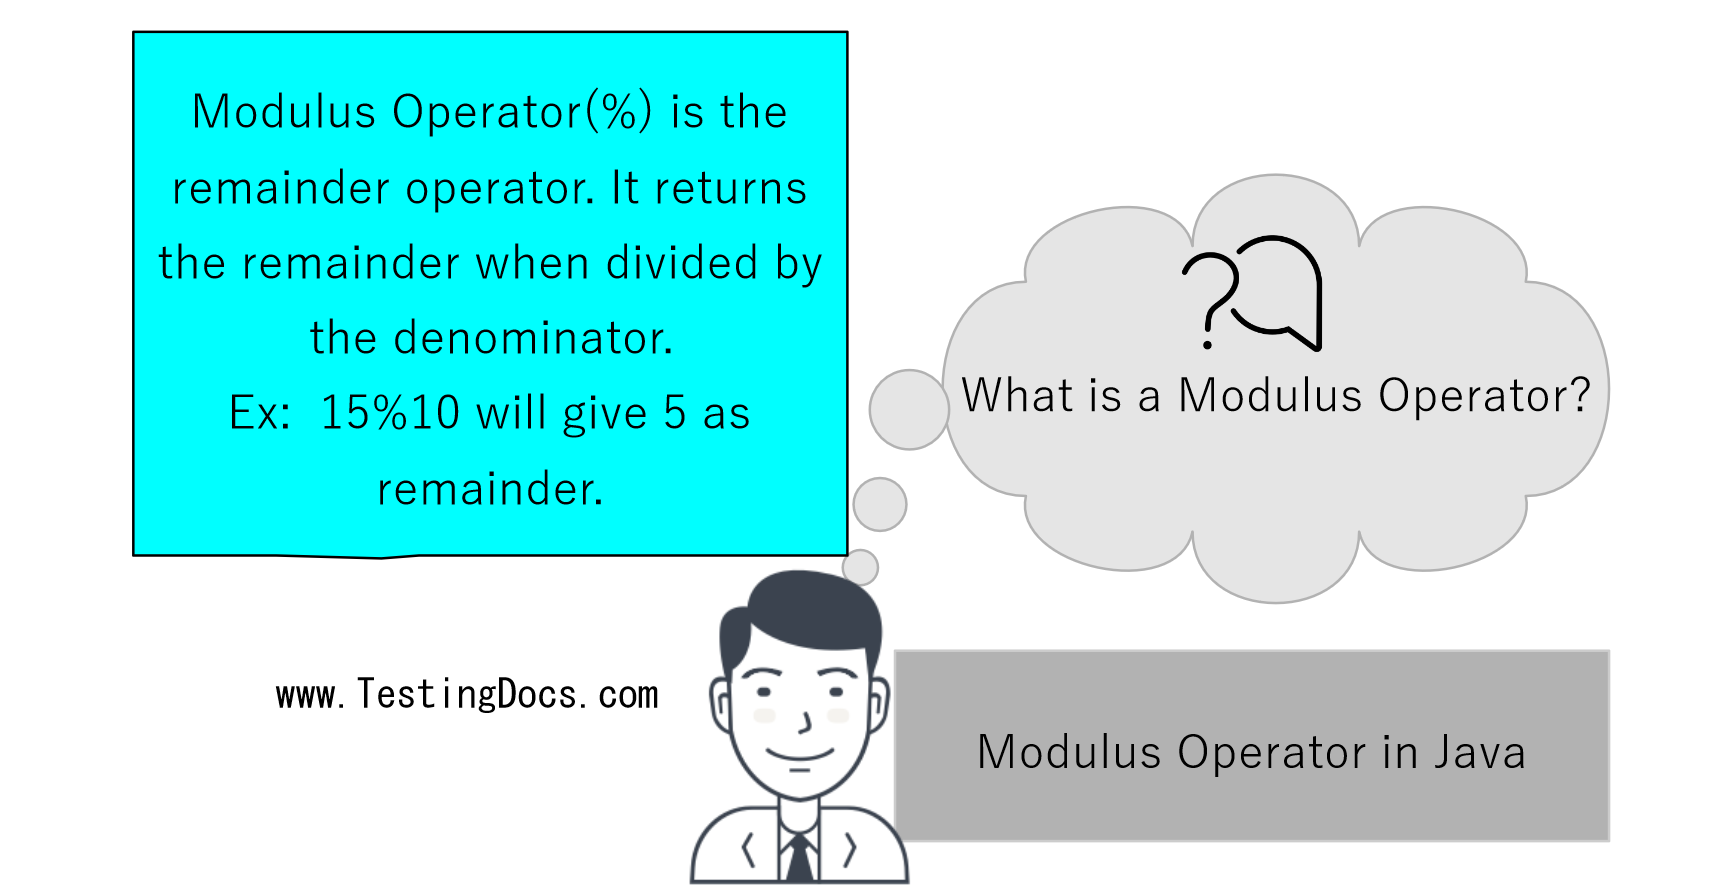 Modulus Operator